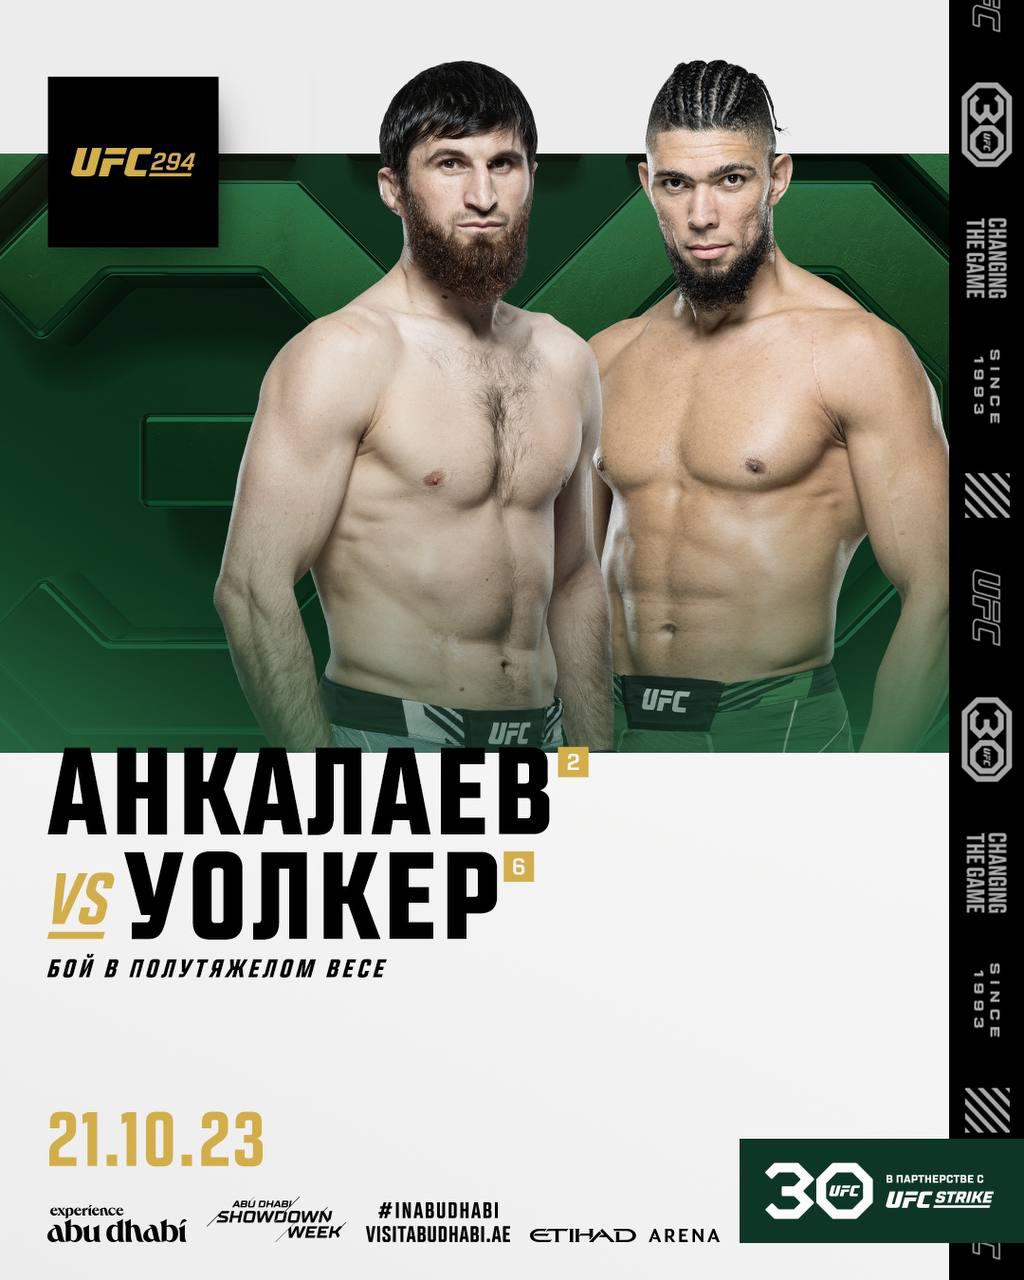 Фото: UFC Russia / Telegram